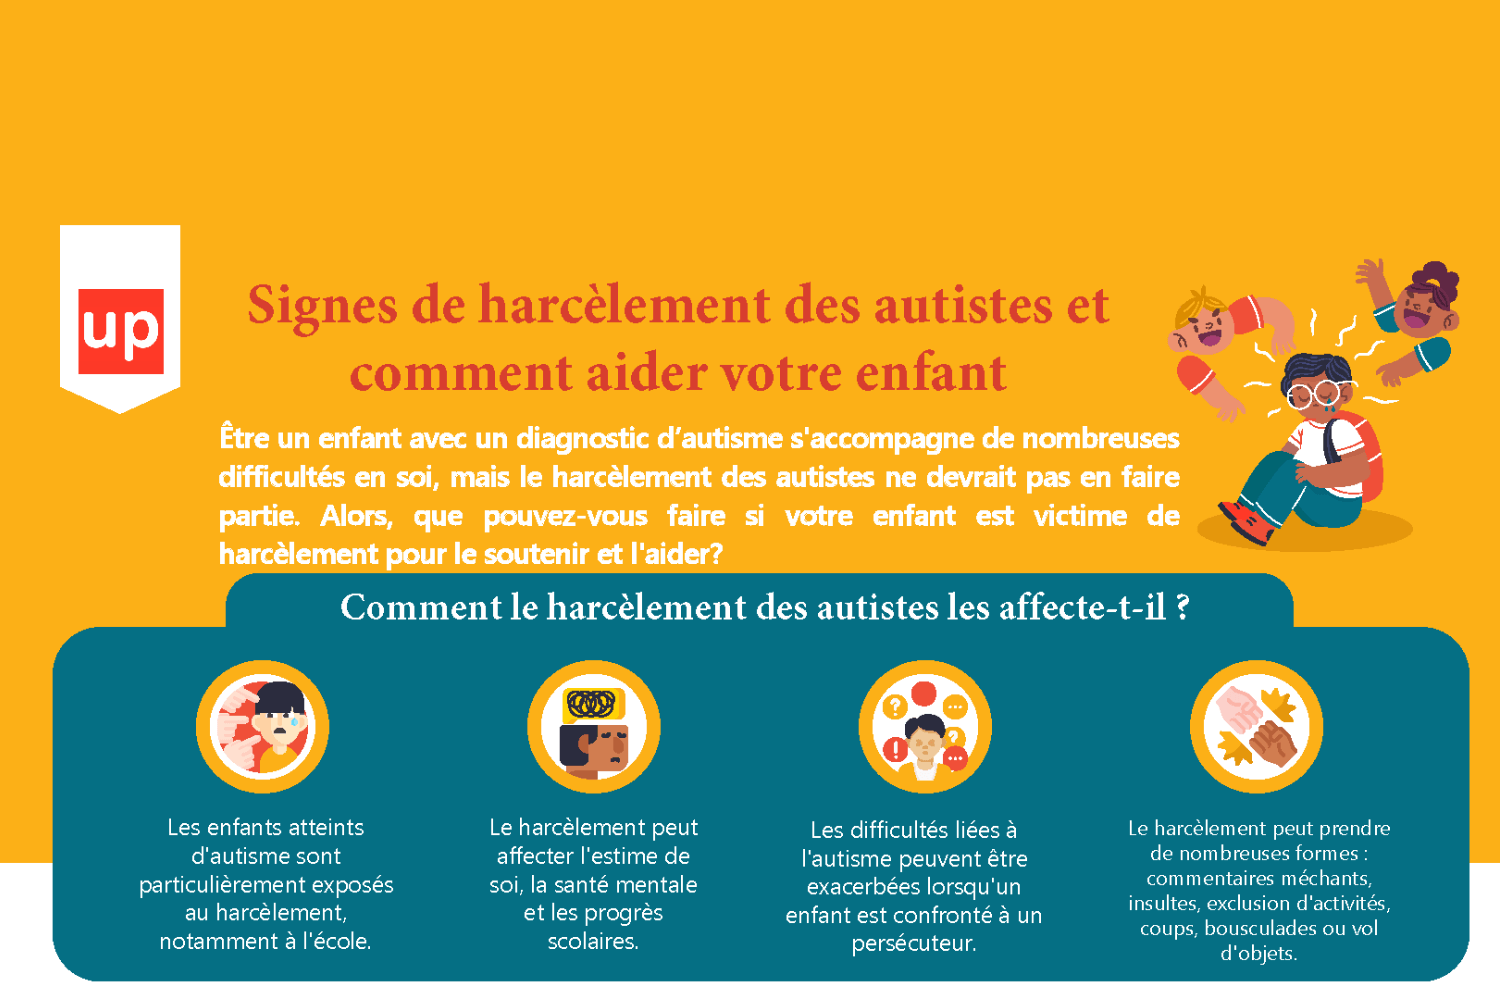 Signes de harcèlement des autistes et comment aider votre enfant - Upbility.fr